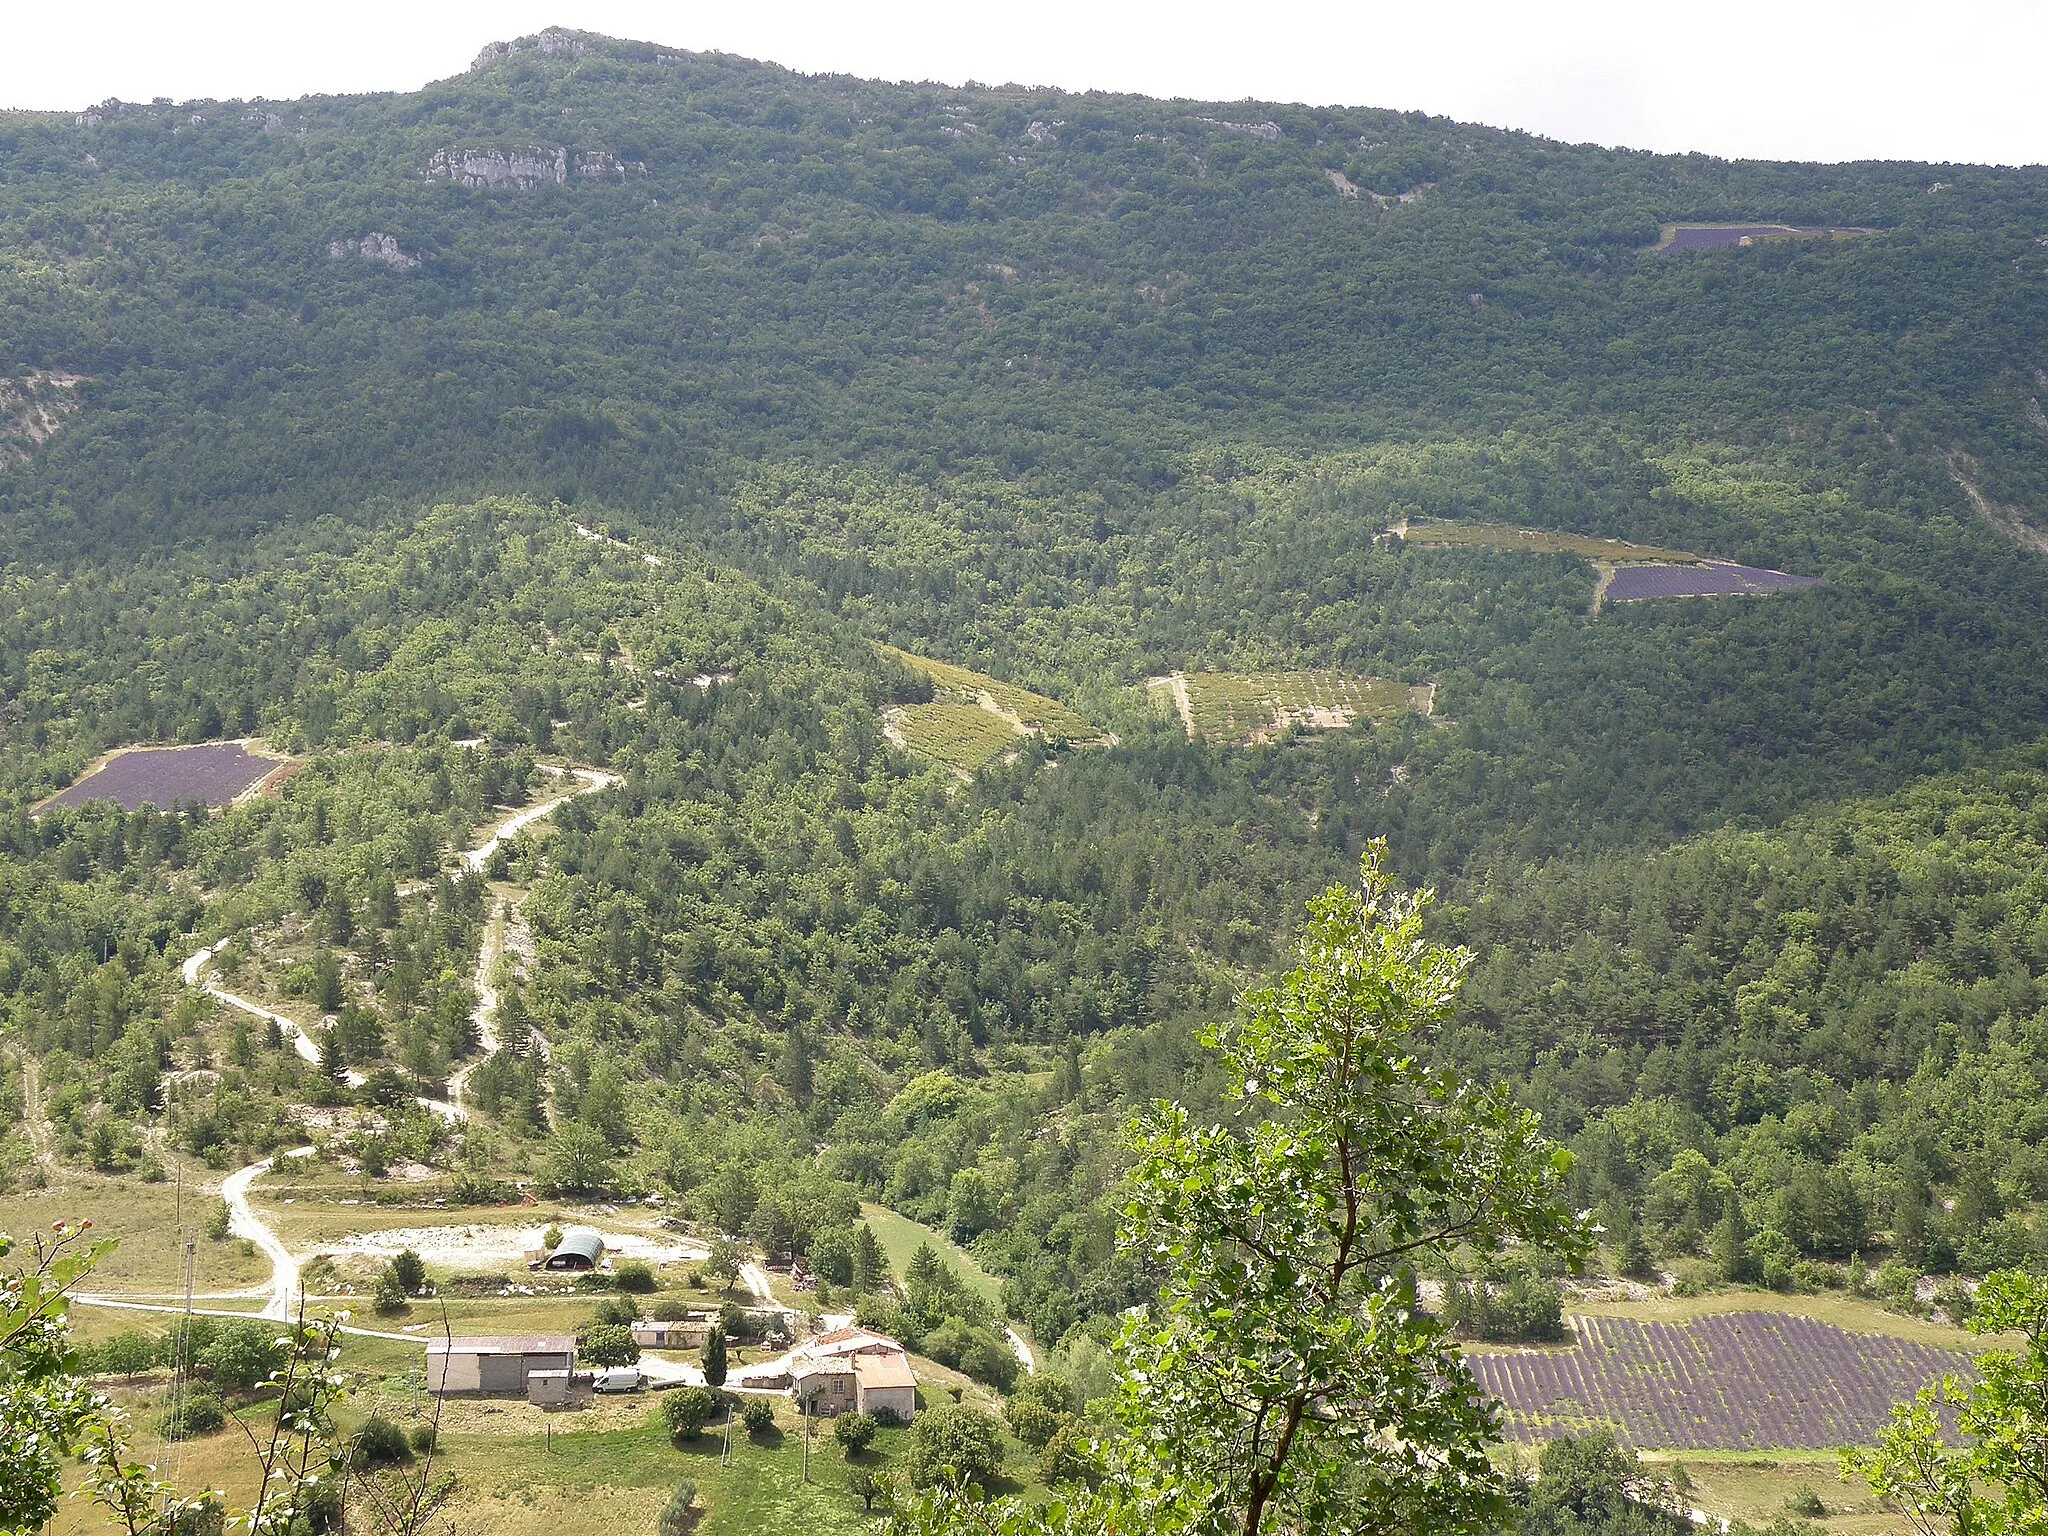 Photo showing: Vercoiran (comm. de la Drôme, France). Vallée de l'Ouvèze, vue depuis le vieux village de Vercoiran. Regard vers le sud-ouest. L'Ouvèze, qui coule en contrebas (d'est vers l'ouest, c.-à-d. de gauche à droite), est hors-champ sur la photo. Ferme d'Aire d'Autanne en bas à gauche. Au fond, montagne du Gravas (alt. 1114m.).